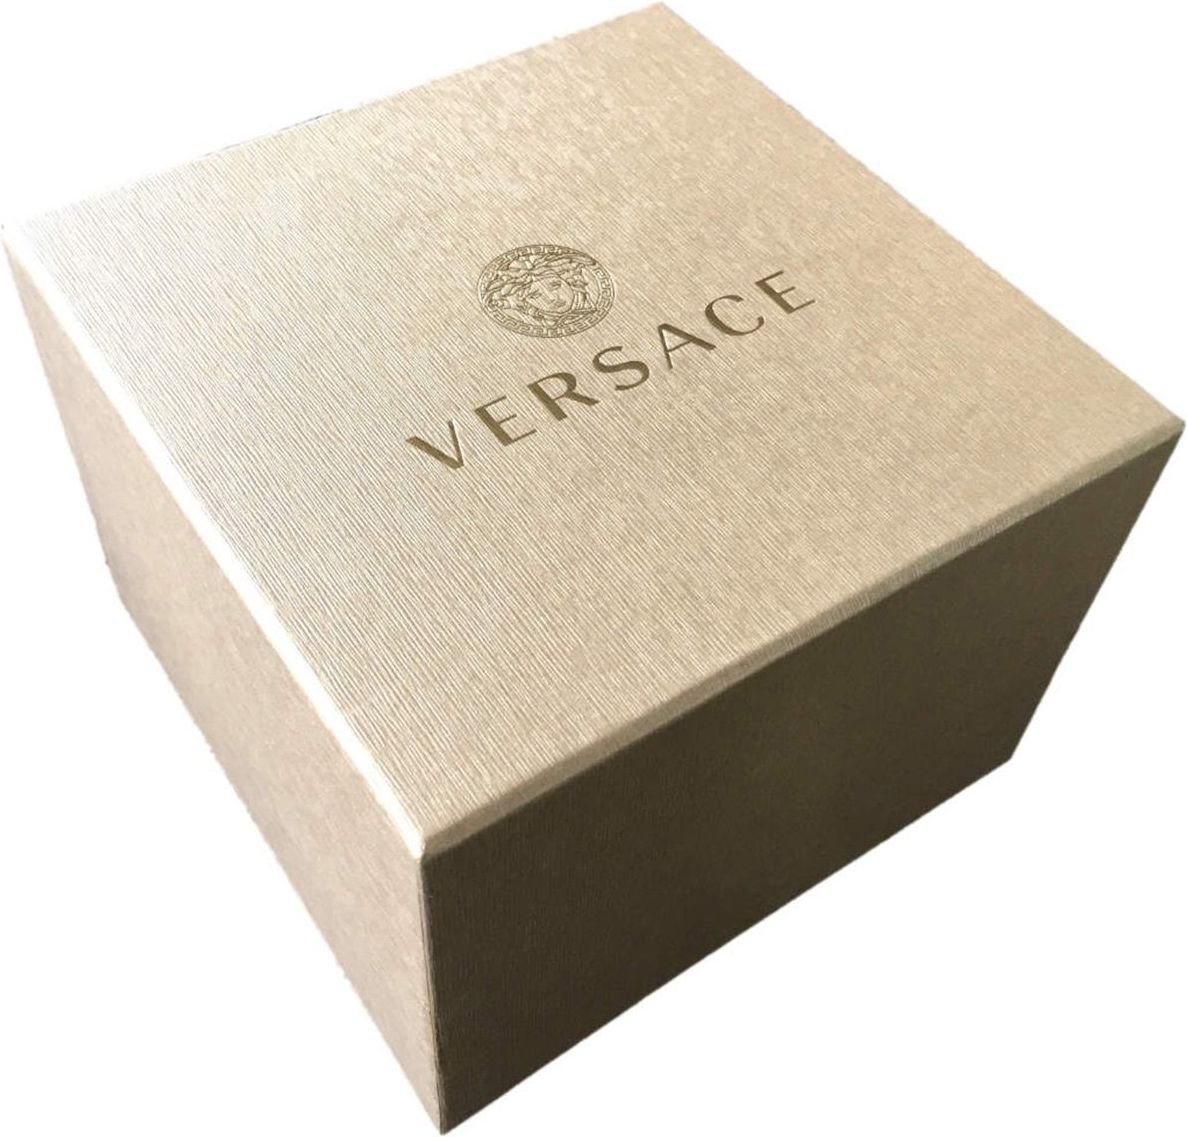 Versace VE2H00621 V-Extreme Pro horloge 46 mm Zilver